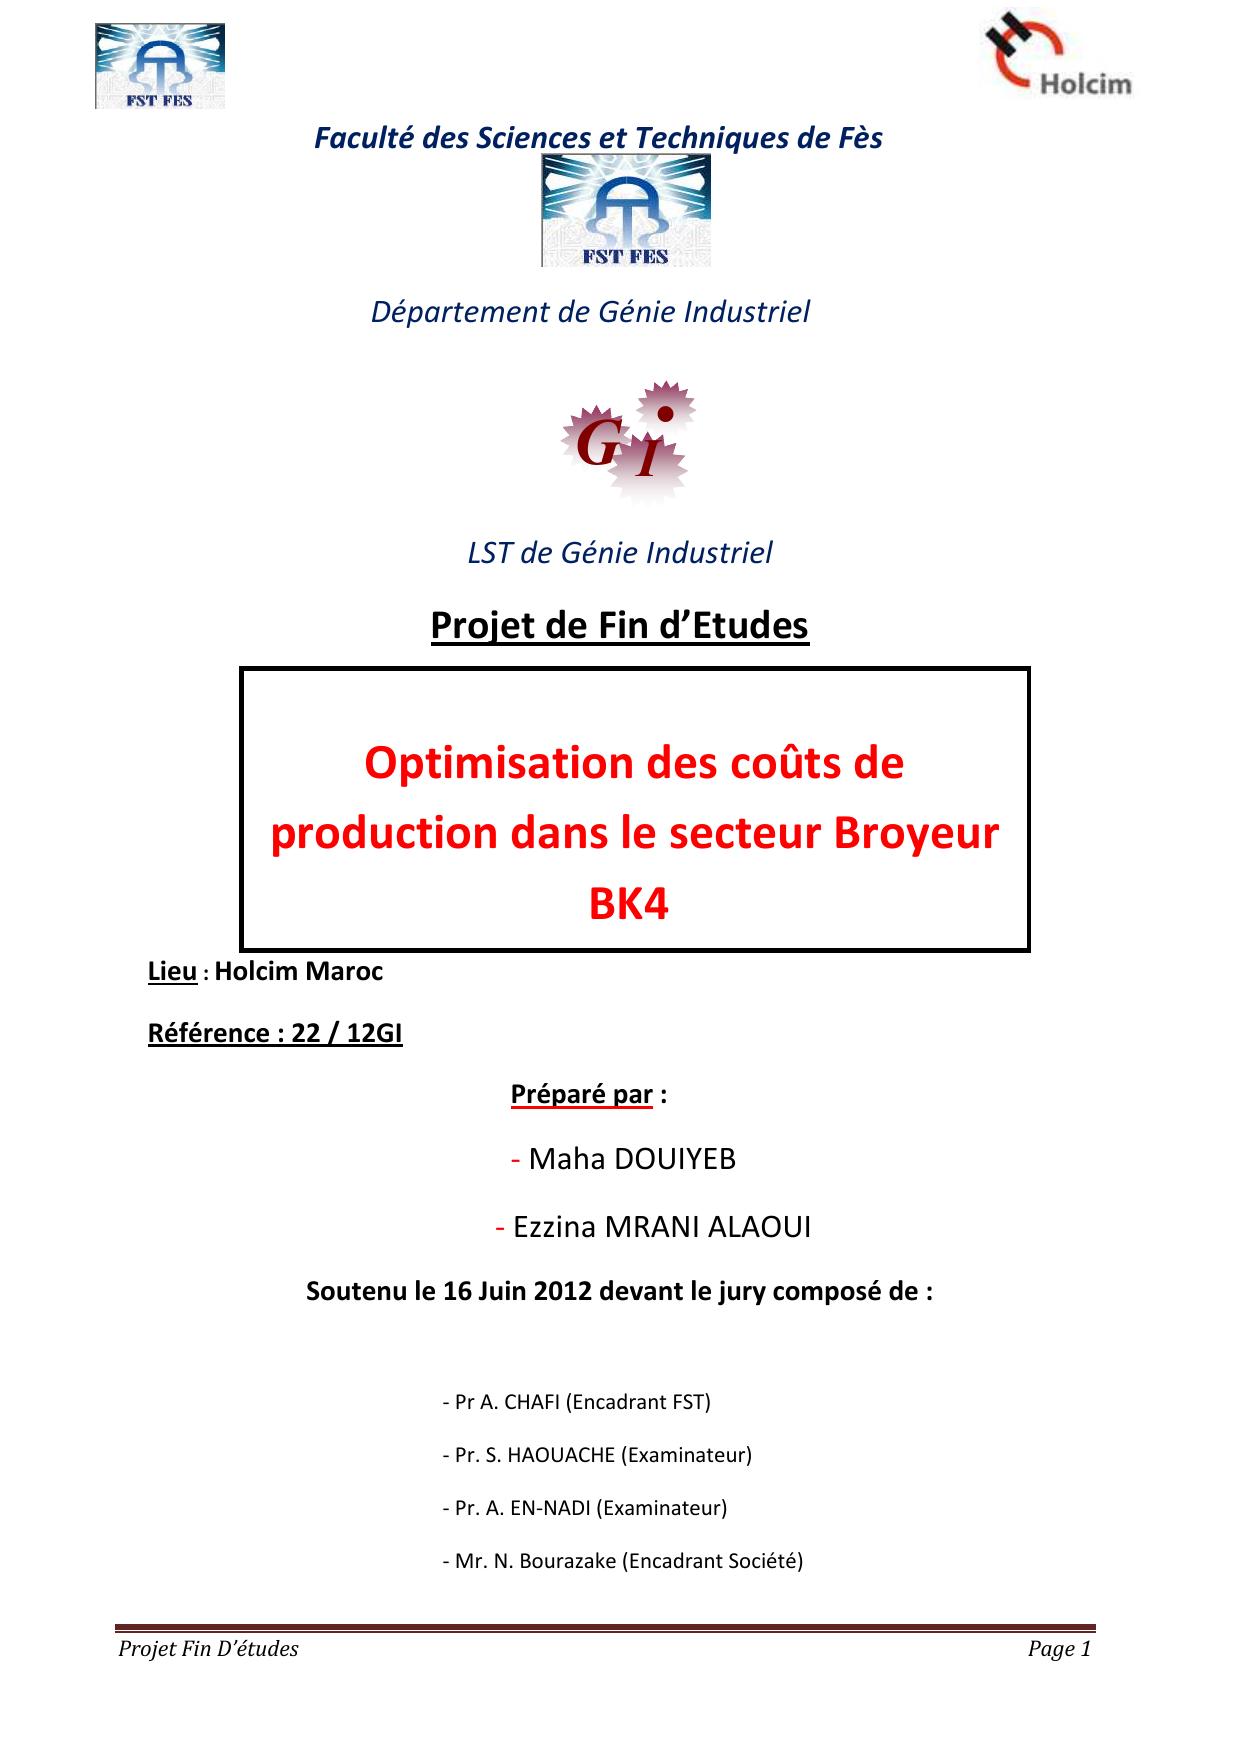 Optimisation des coûts de production dans le secteur Broyeur BK4